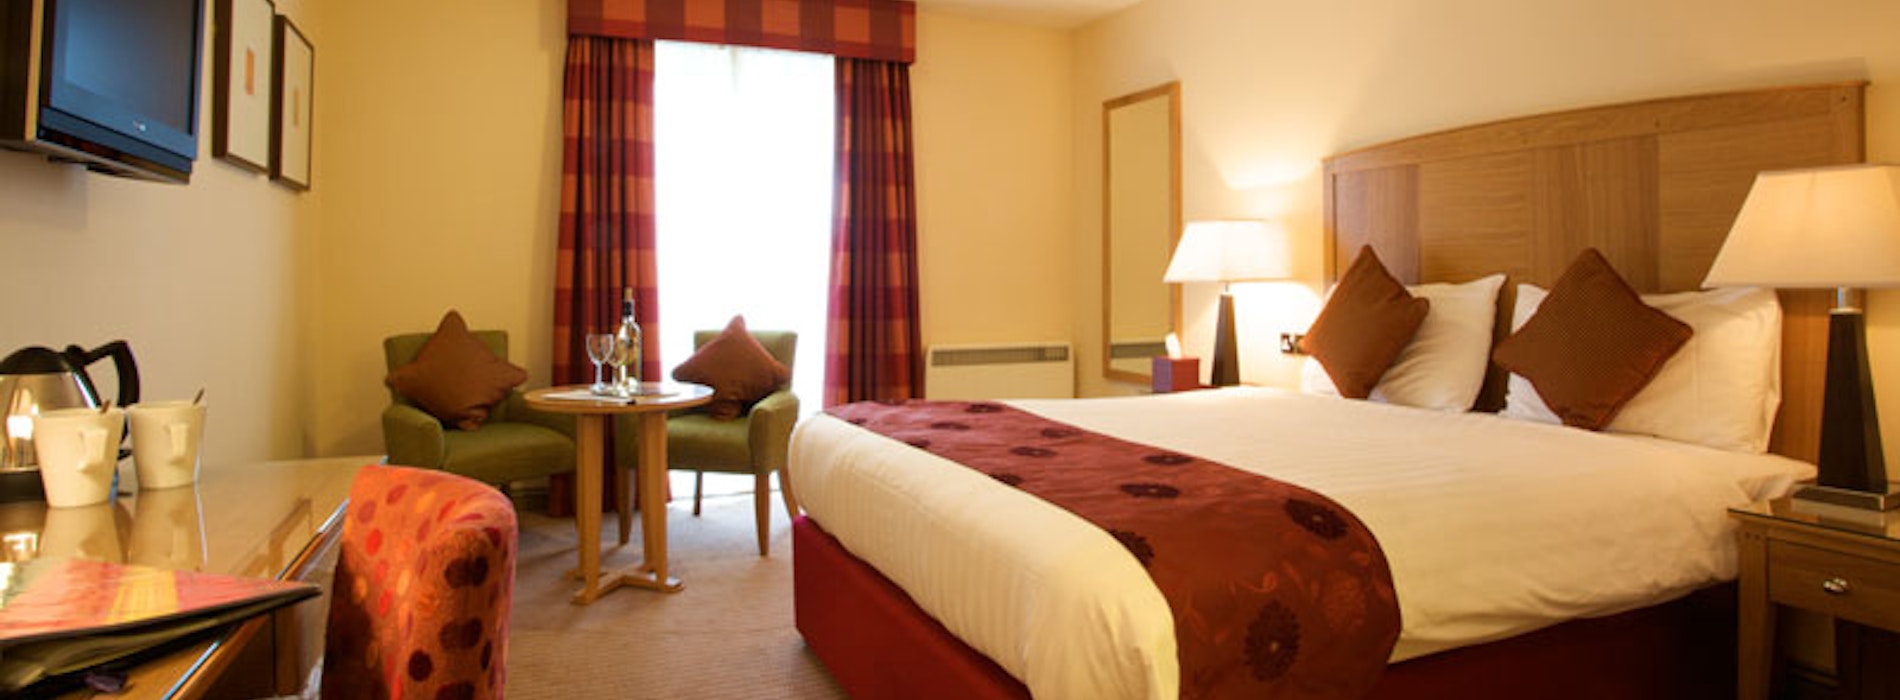 Residence Inn by Marriott Slough near LEGOLAND Windsor Resort